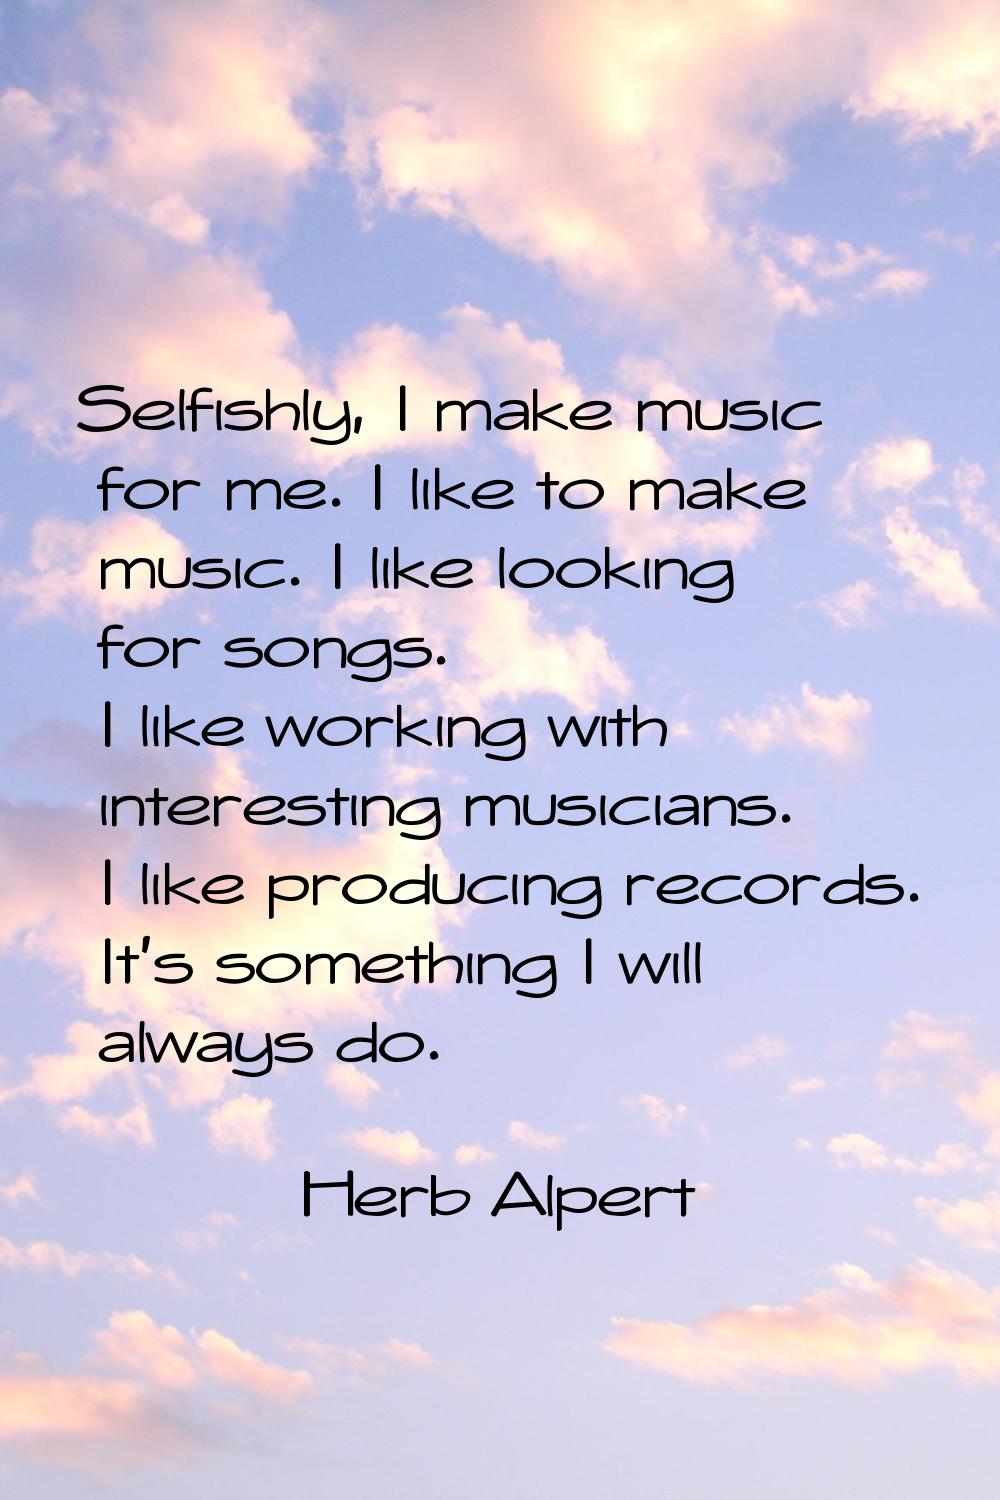 Selfishly, I make music for me. I like to make music. I like looking for songs. I like working with